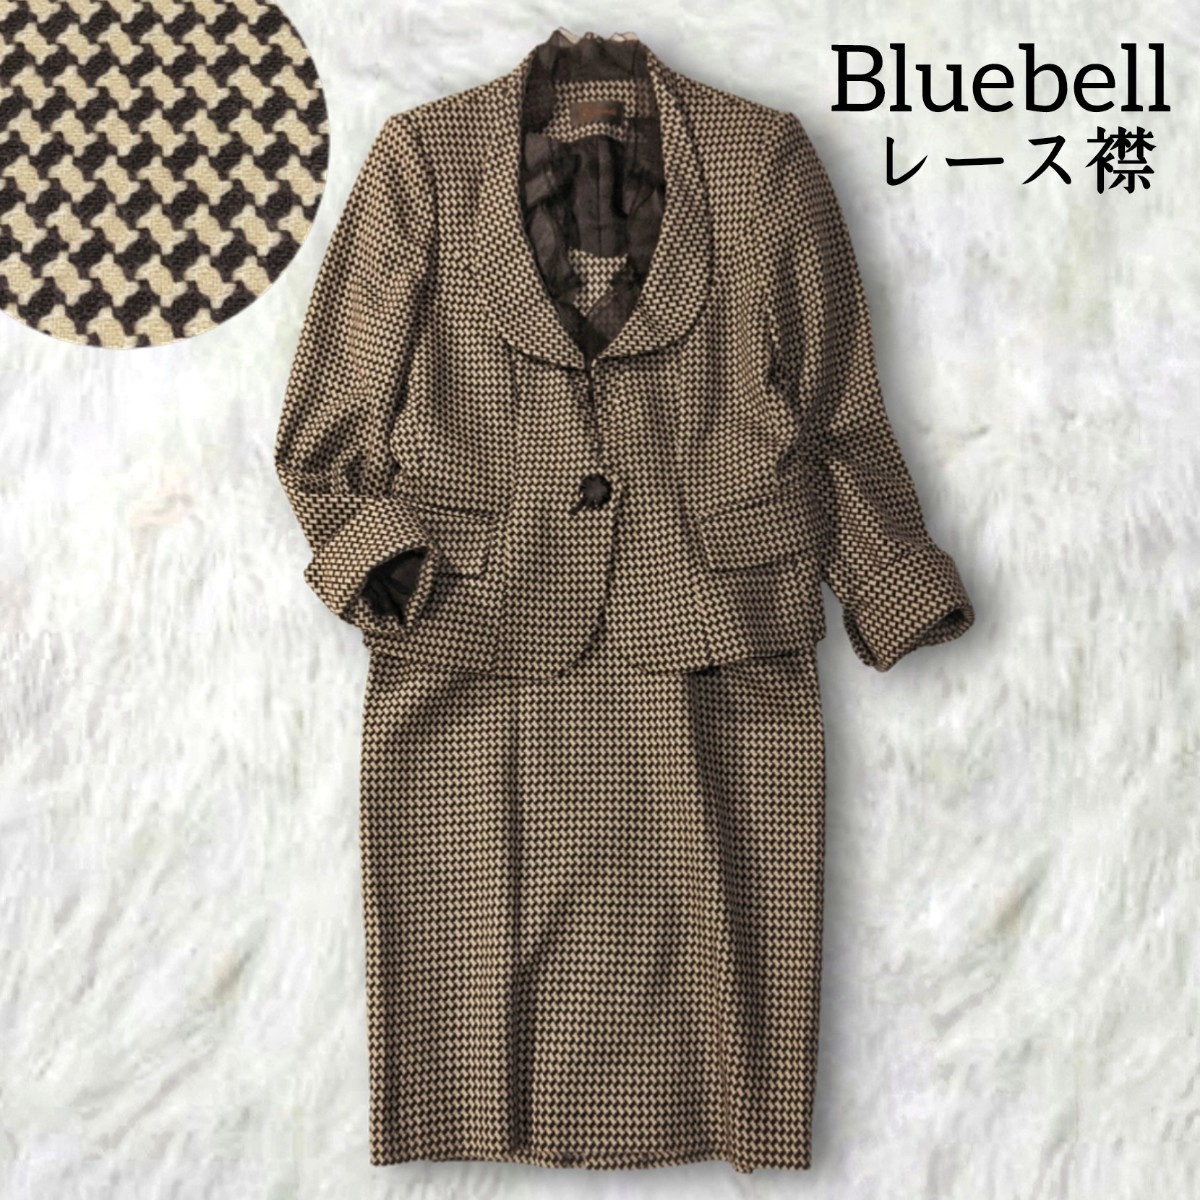 358 【Bluebell】 ブルーベル 千鳥格子 スカートスーツ 40 L 日本製 ブラウン 茶色 ベージュ フォーマル セレモニー 秋冬 レース襟